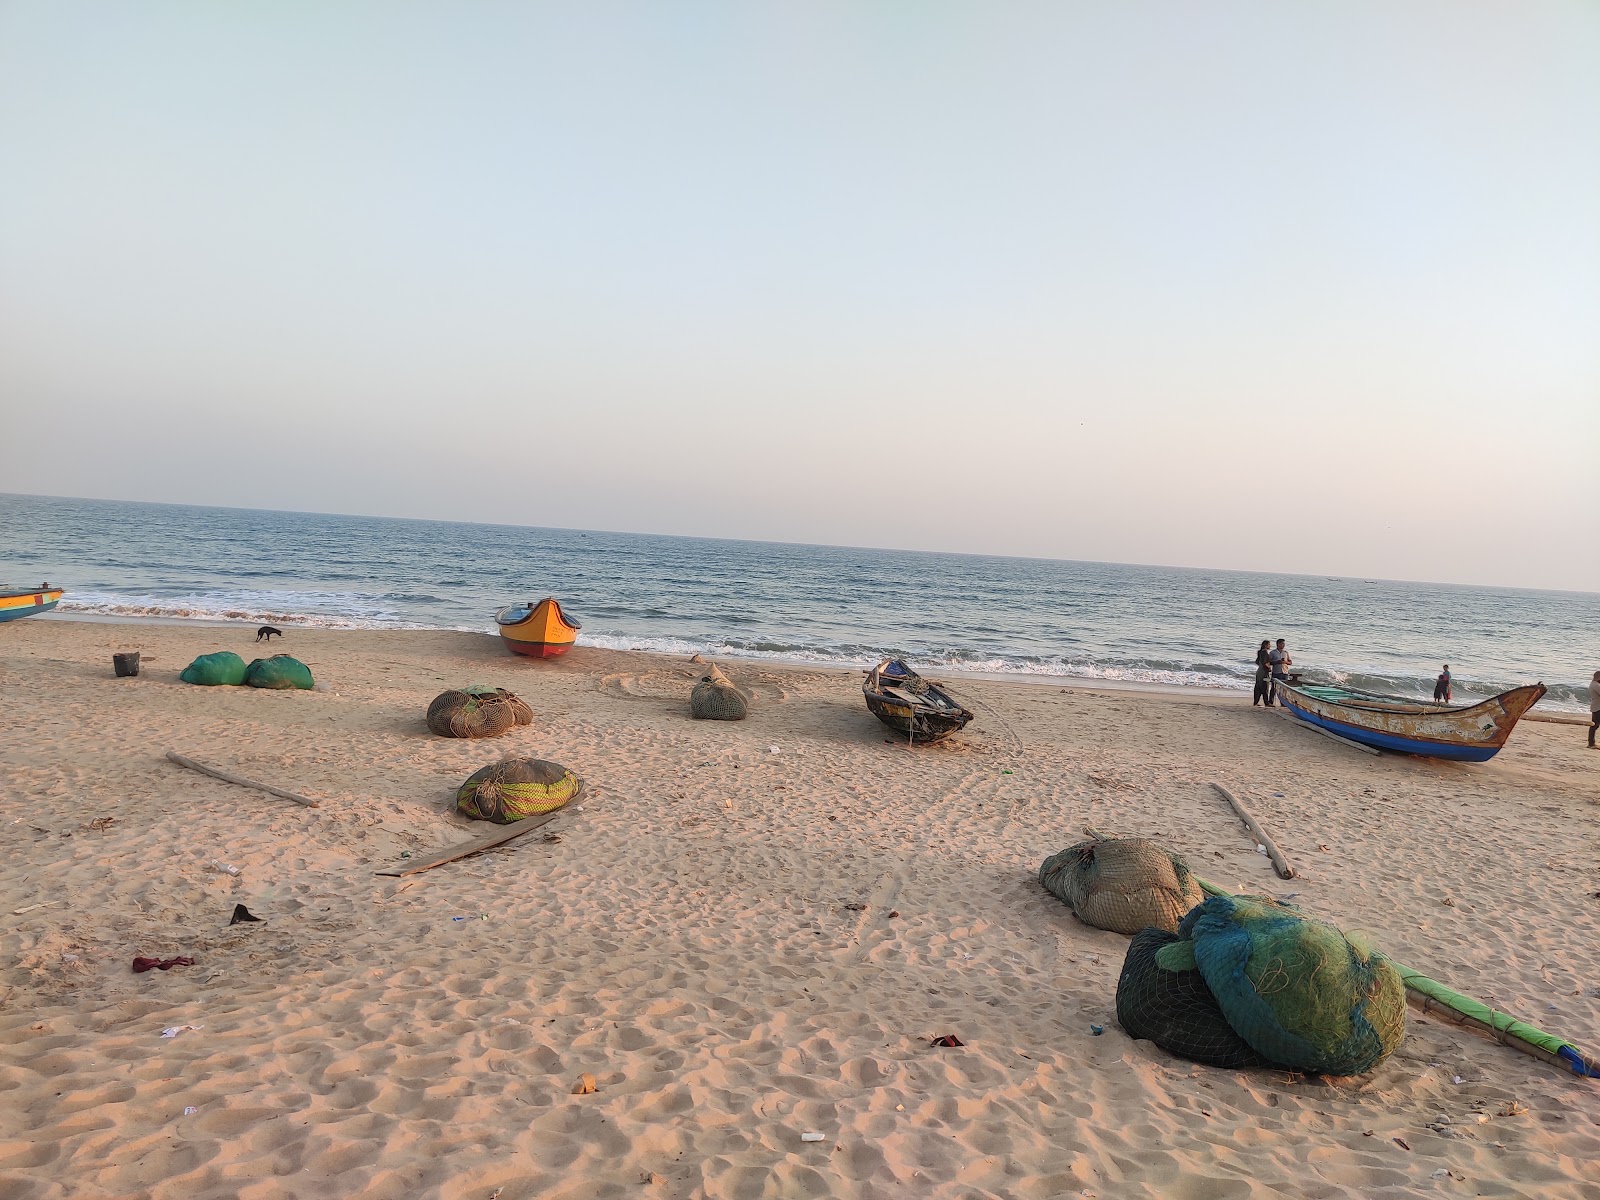 Rajjyapeta Beach'in fotoğrafı parlak kum yüzey ile